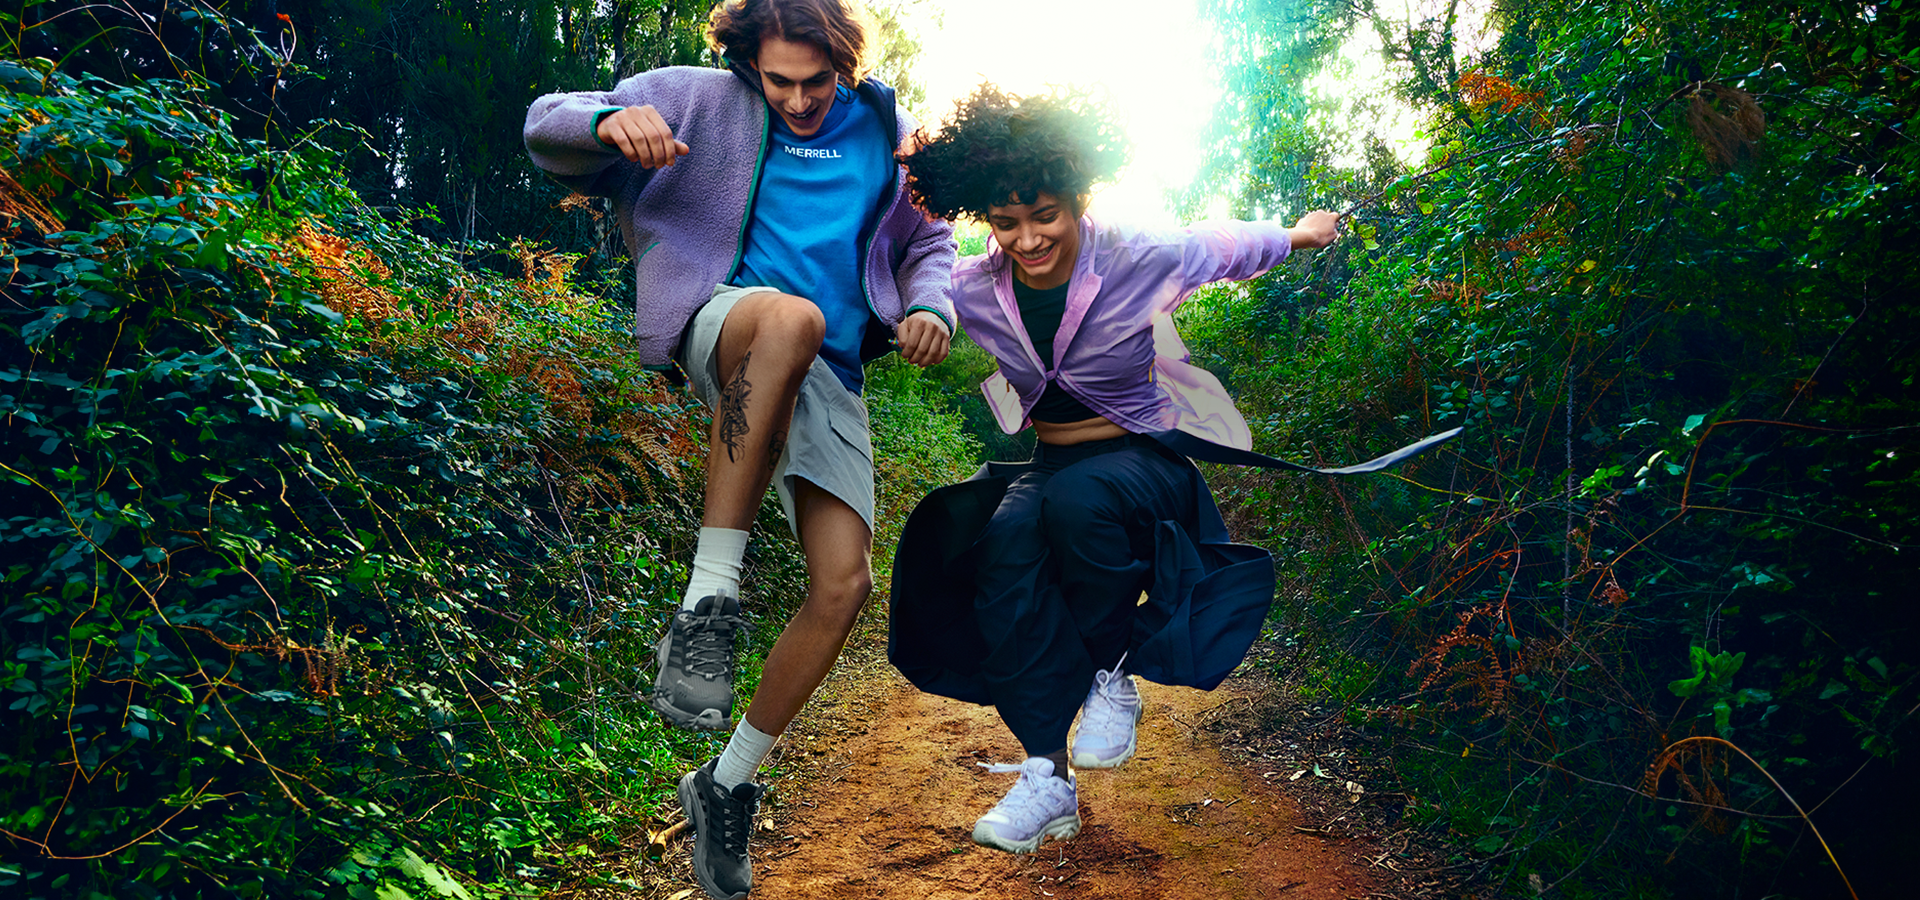 Deux personnes sautant sur un chemin de terre et portant des chaussures de randonnée Merrell.